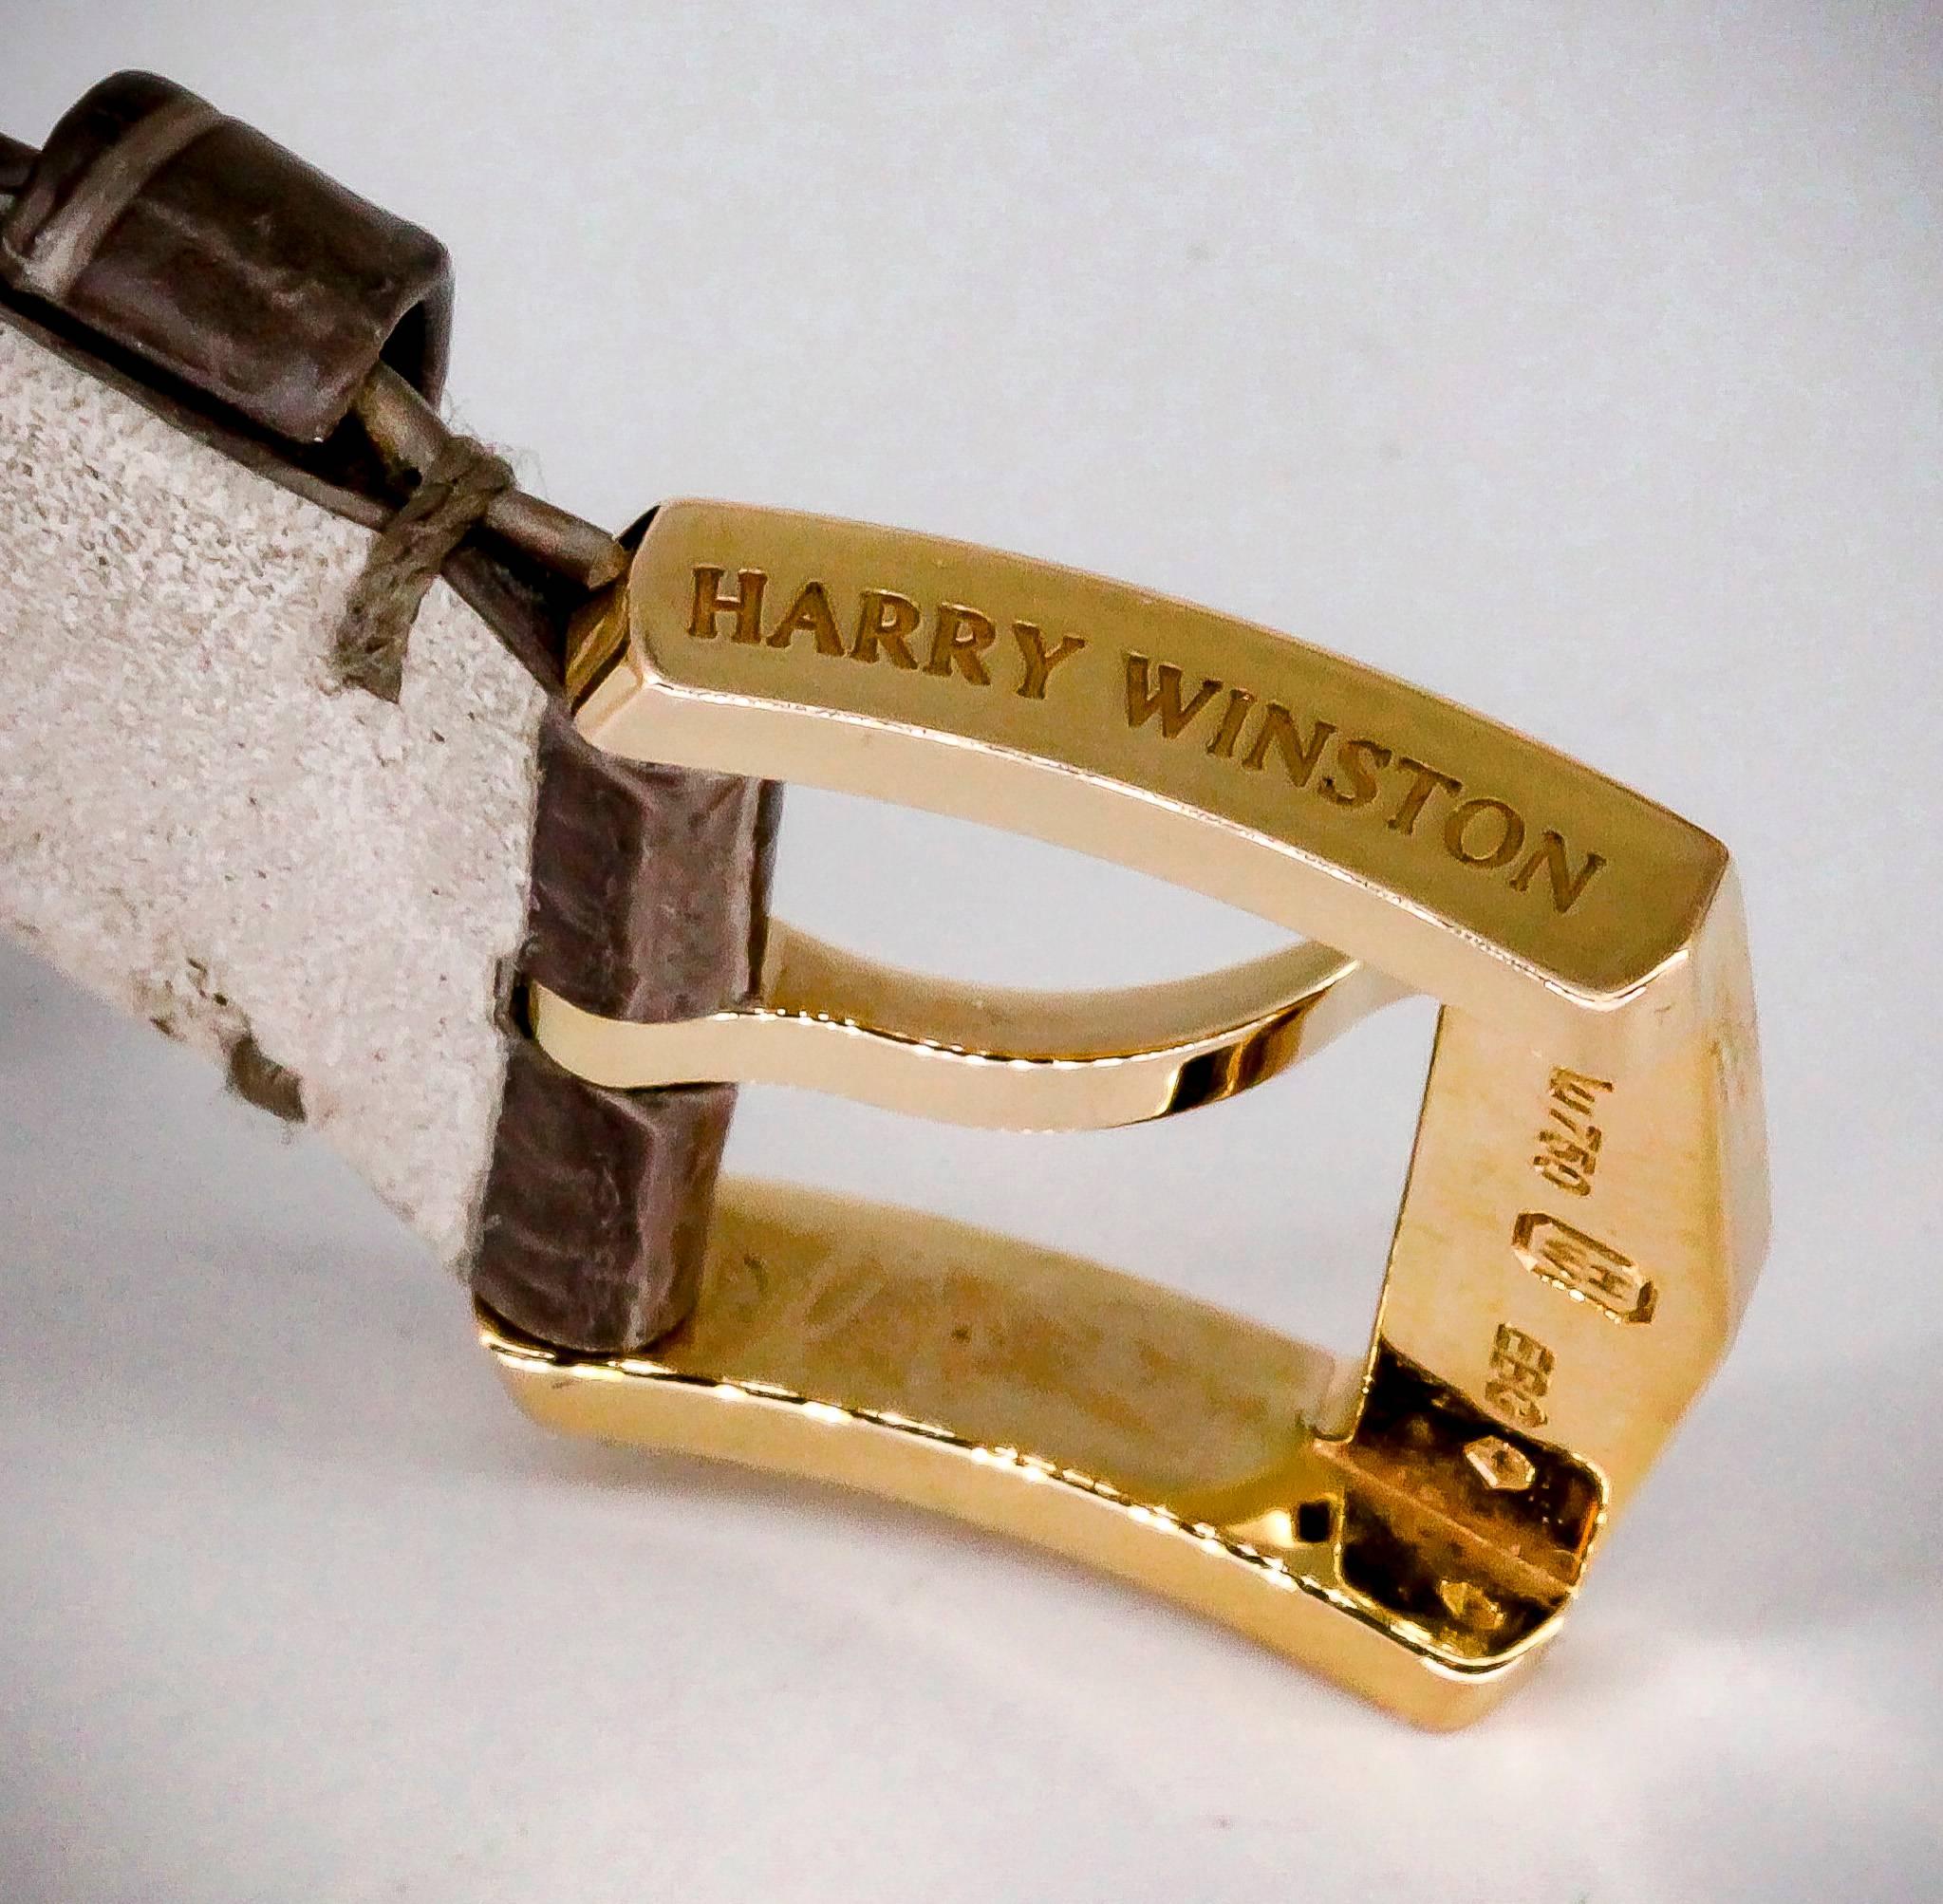 Harry Winston Rose Gold Diamond Midnight Quartz Wristwatch 2